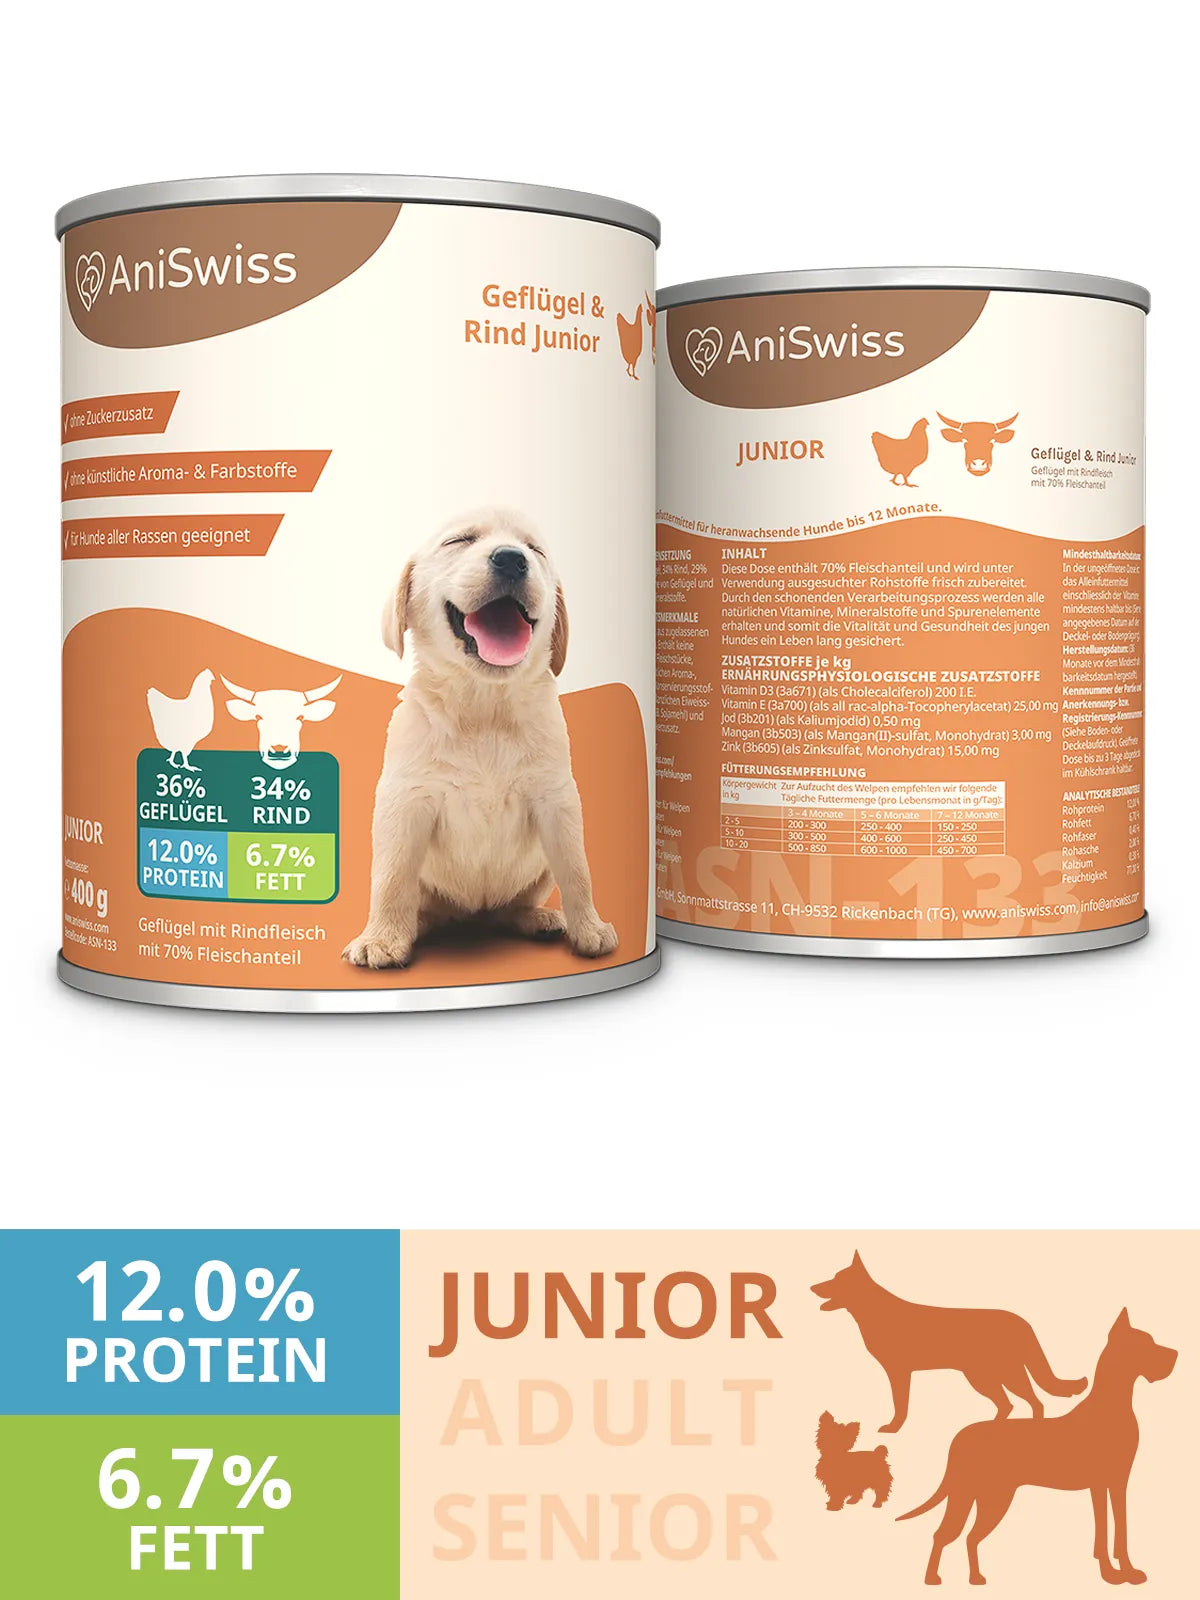 AniSwiss Hundefutter für Junioren und Welpen Bild zeigt Protein- und Fett-Werte